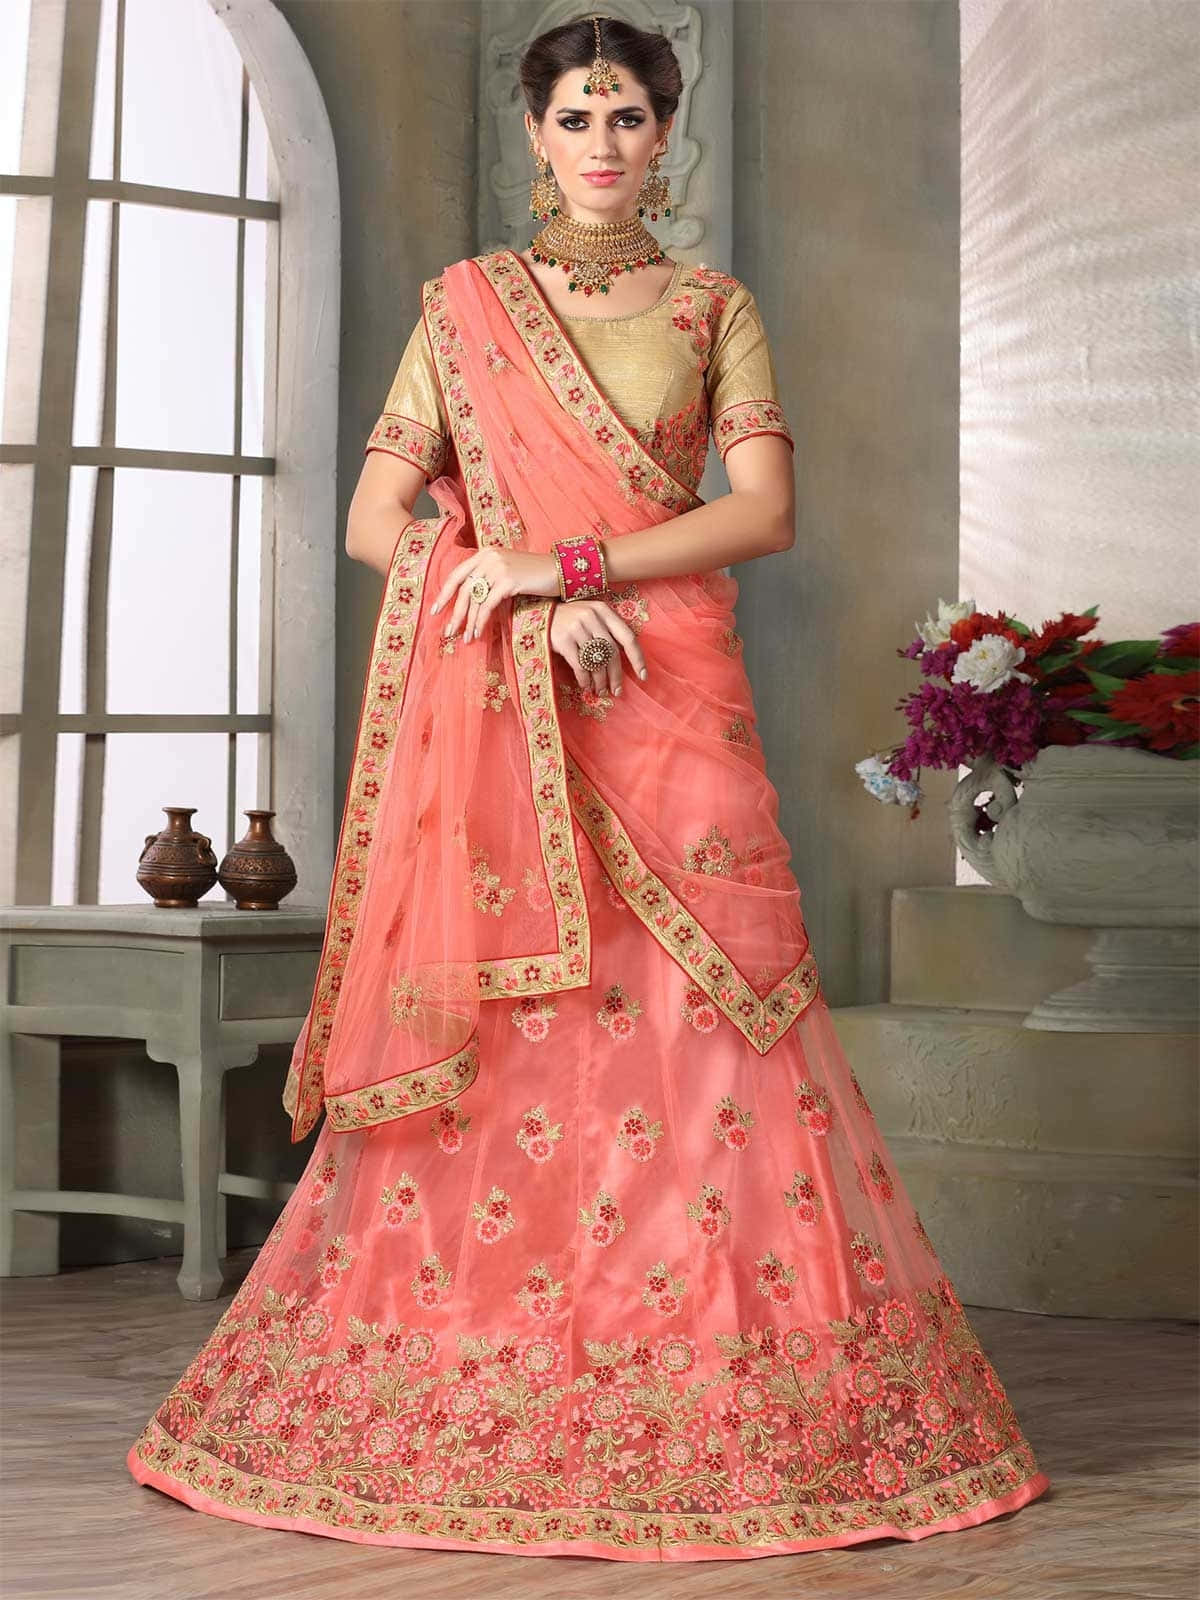 Imagende Una Novia India Con Vestido De Color Durazno Y Flores.